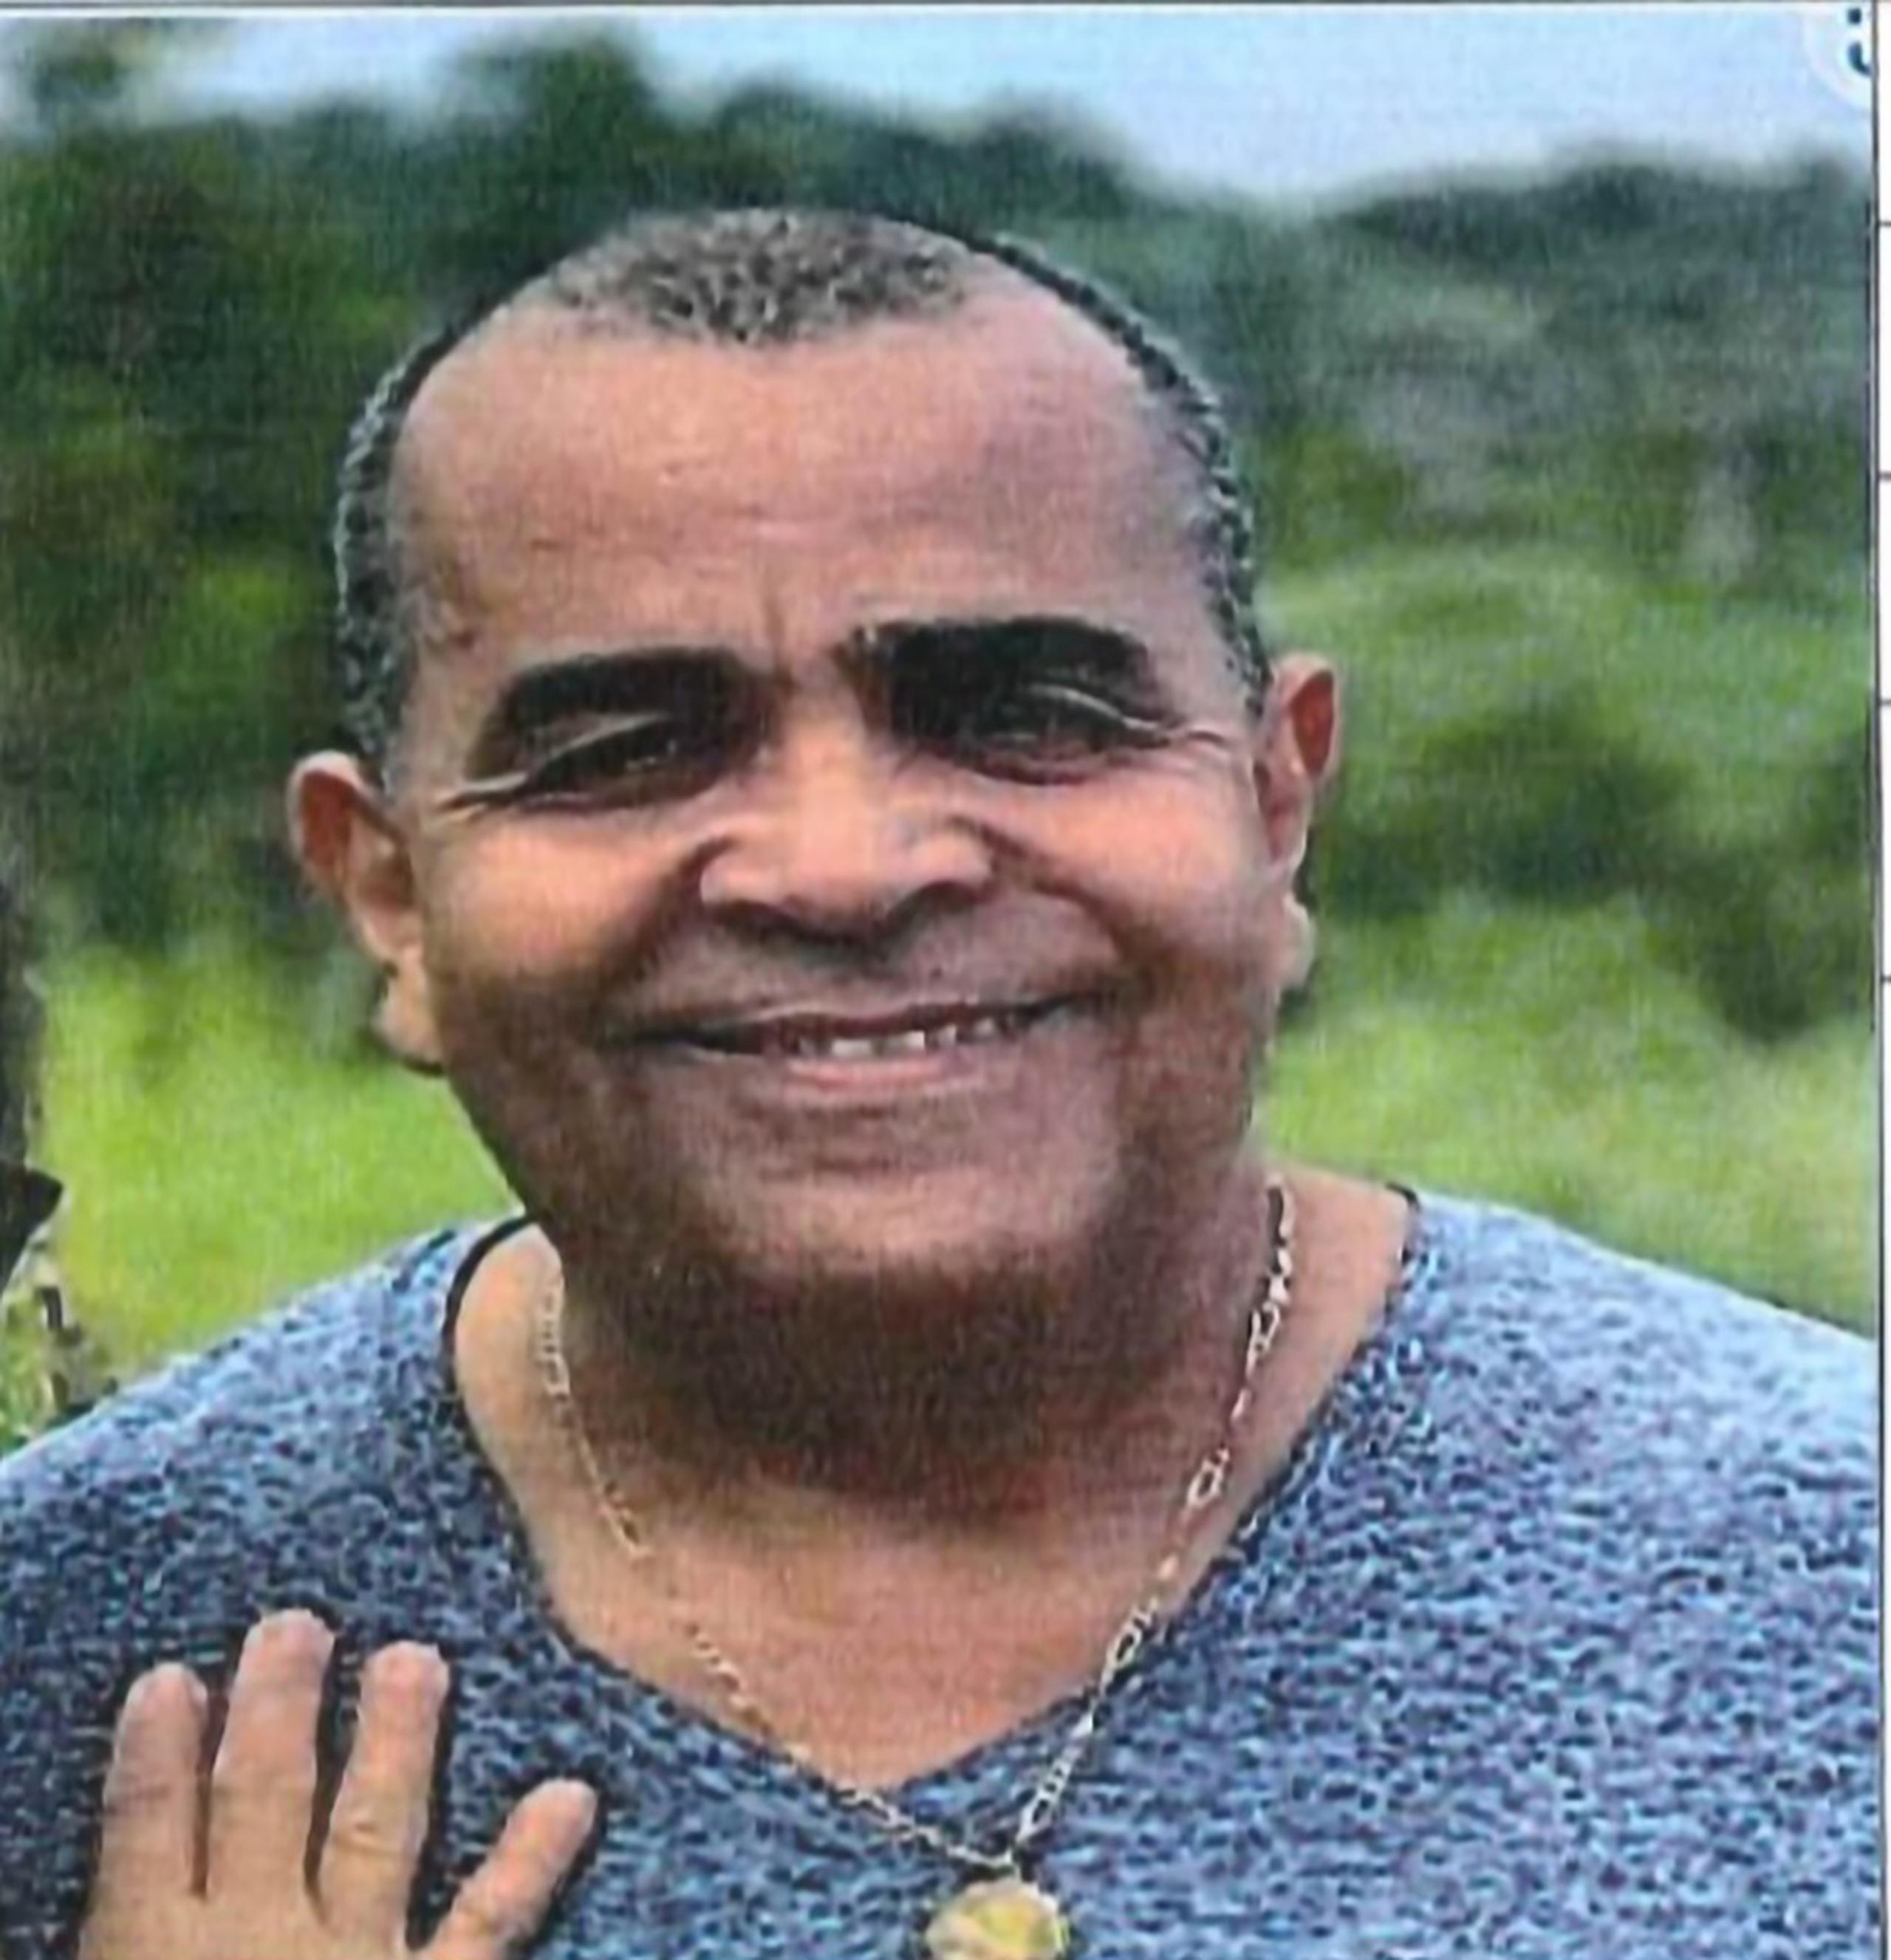 El cazador Jorge A. Cordero Adorno, de 59 años, fue visto por última vez el 20 de febrero en el campamento de la Isla de Mona.